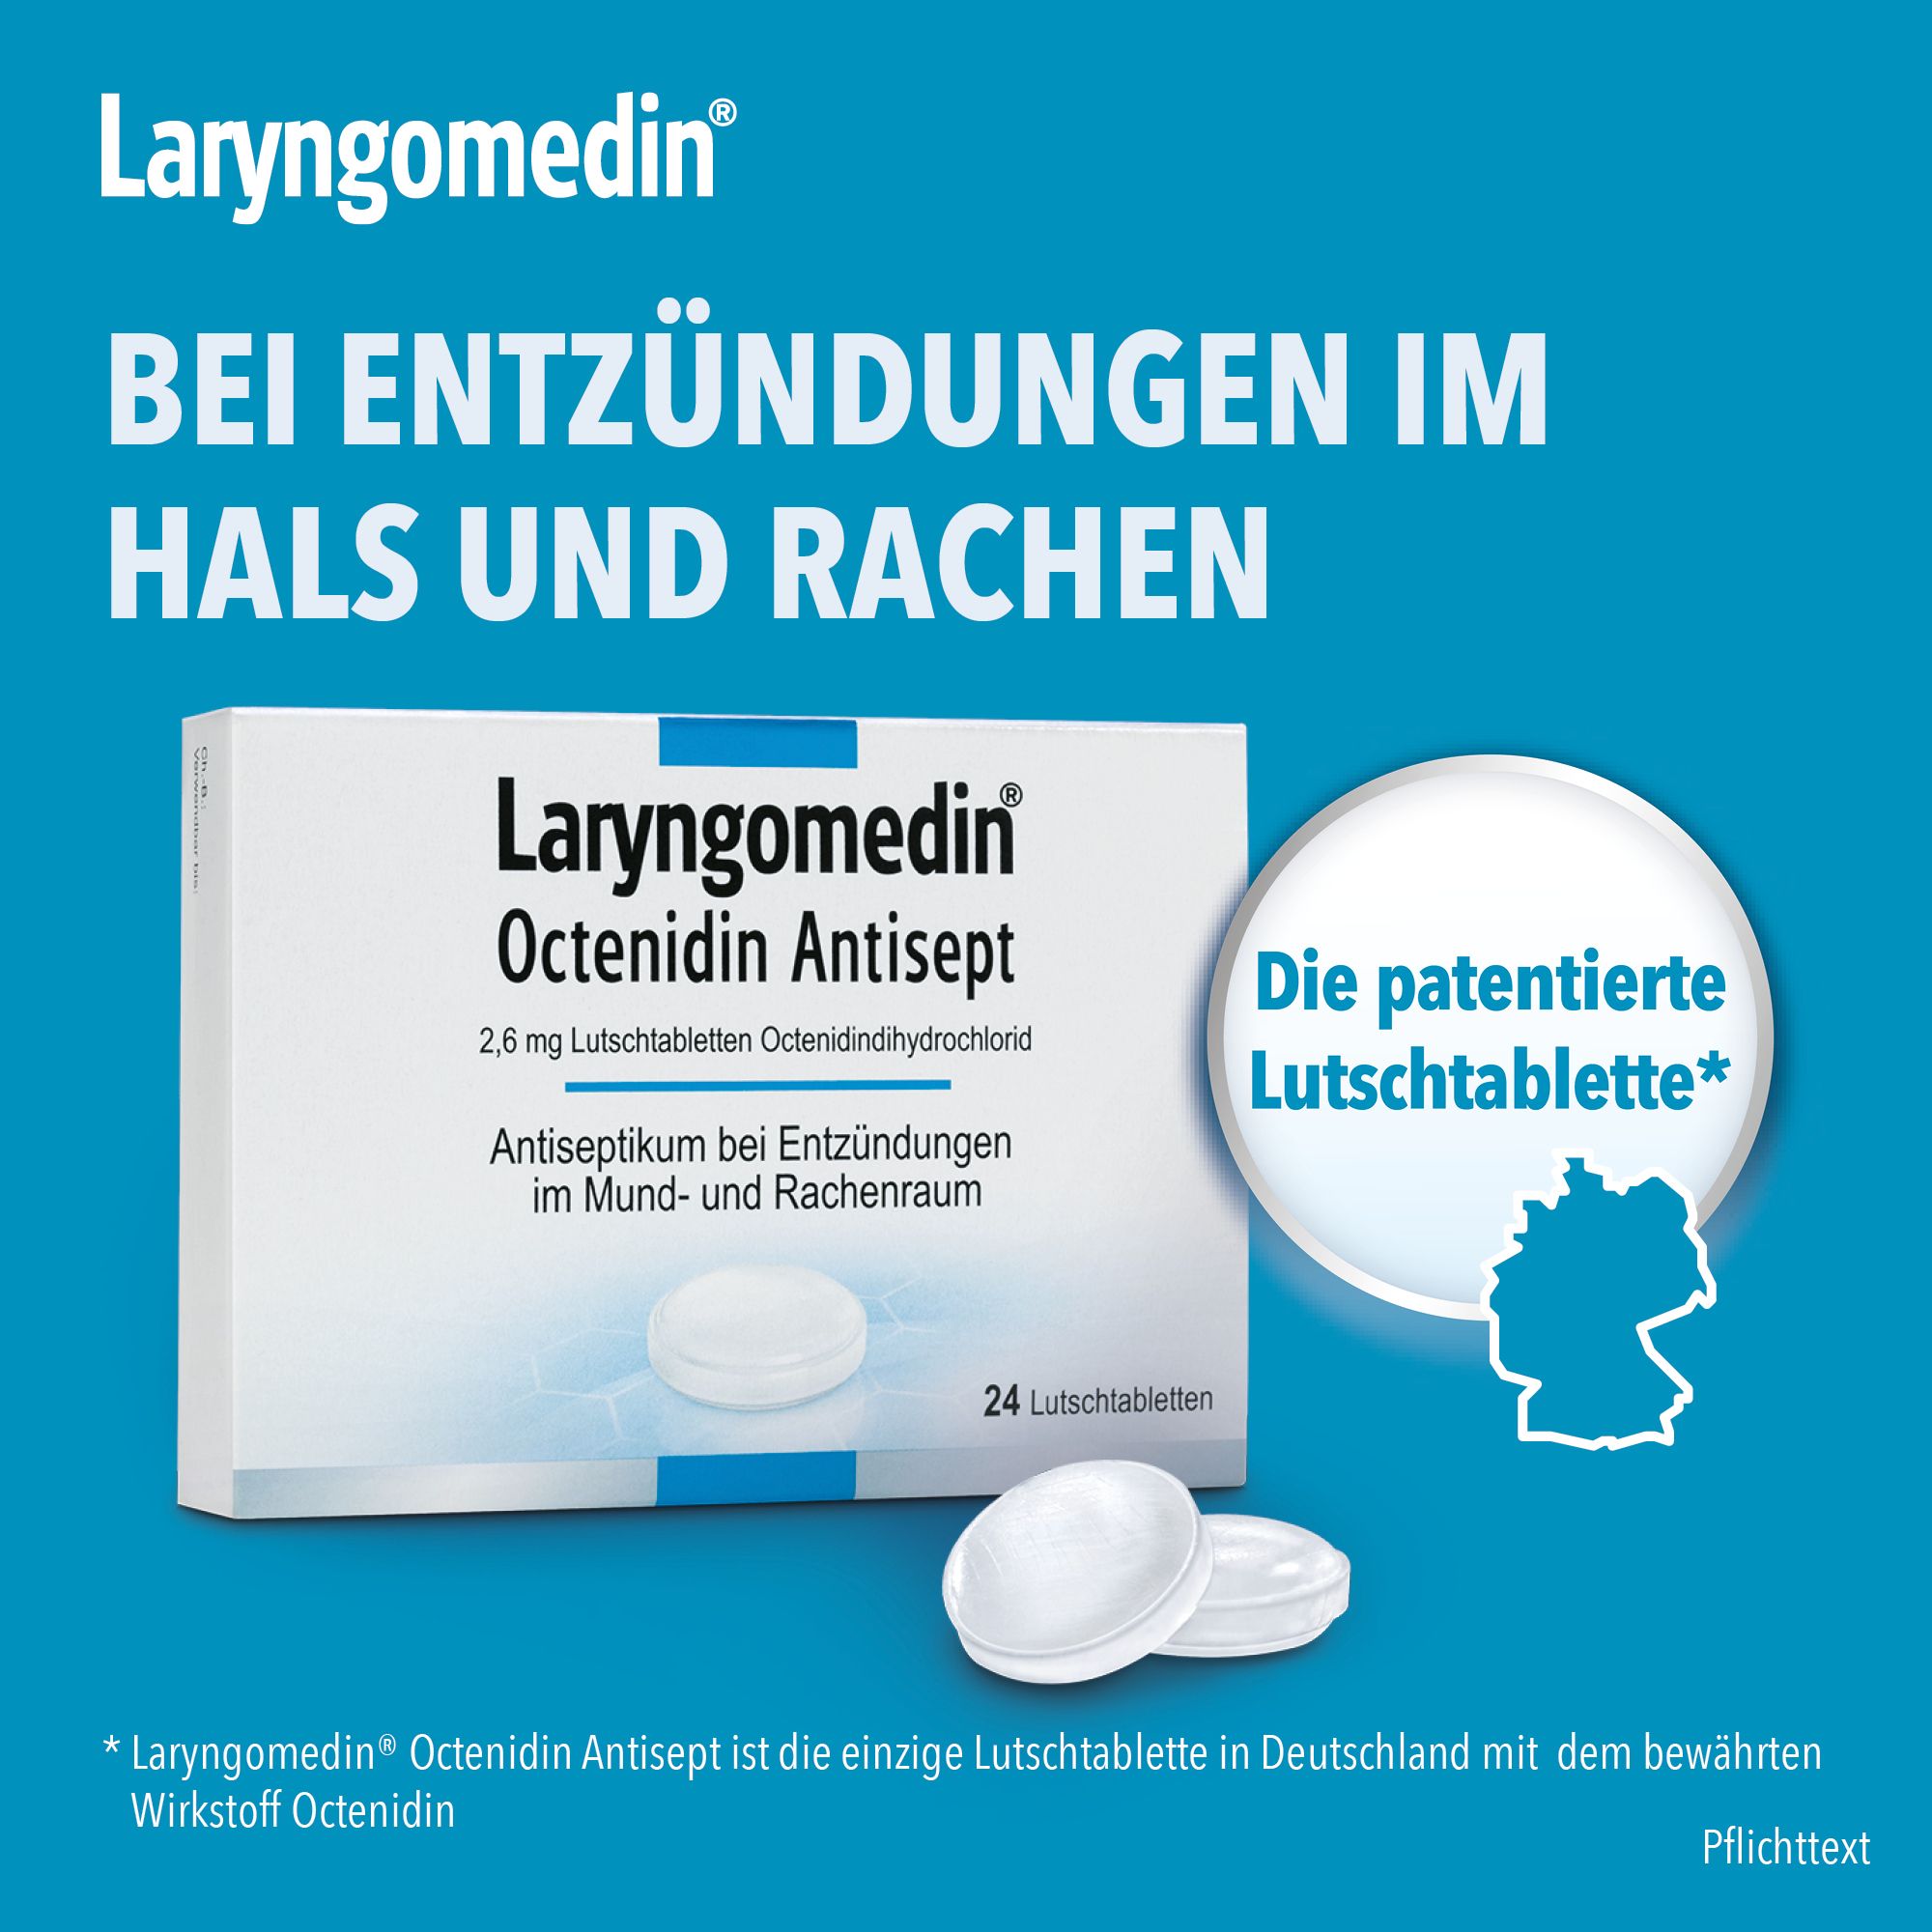 Laryngomedin® Octenidin Antisept